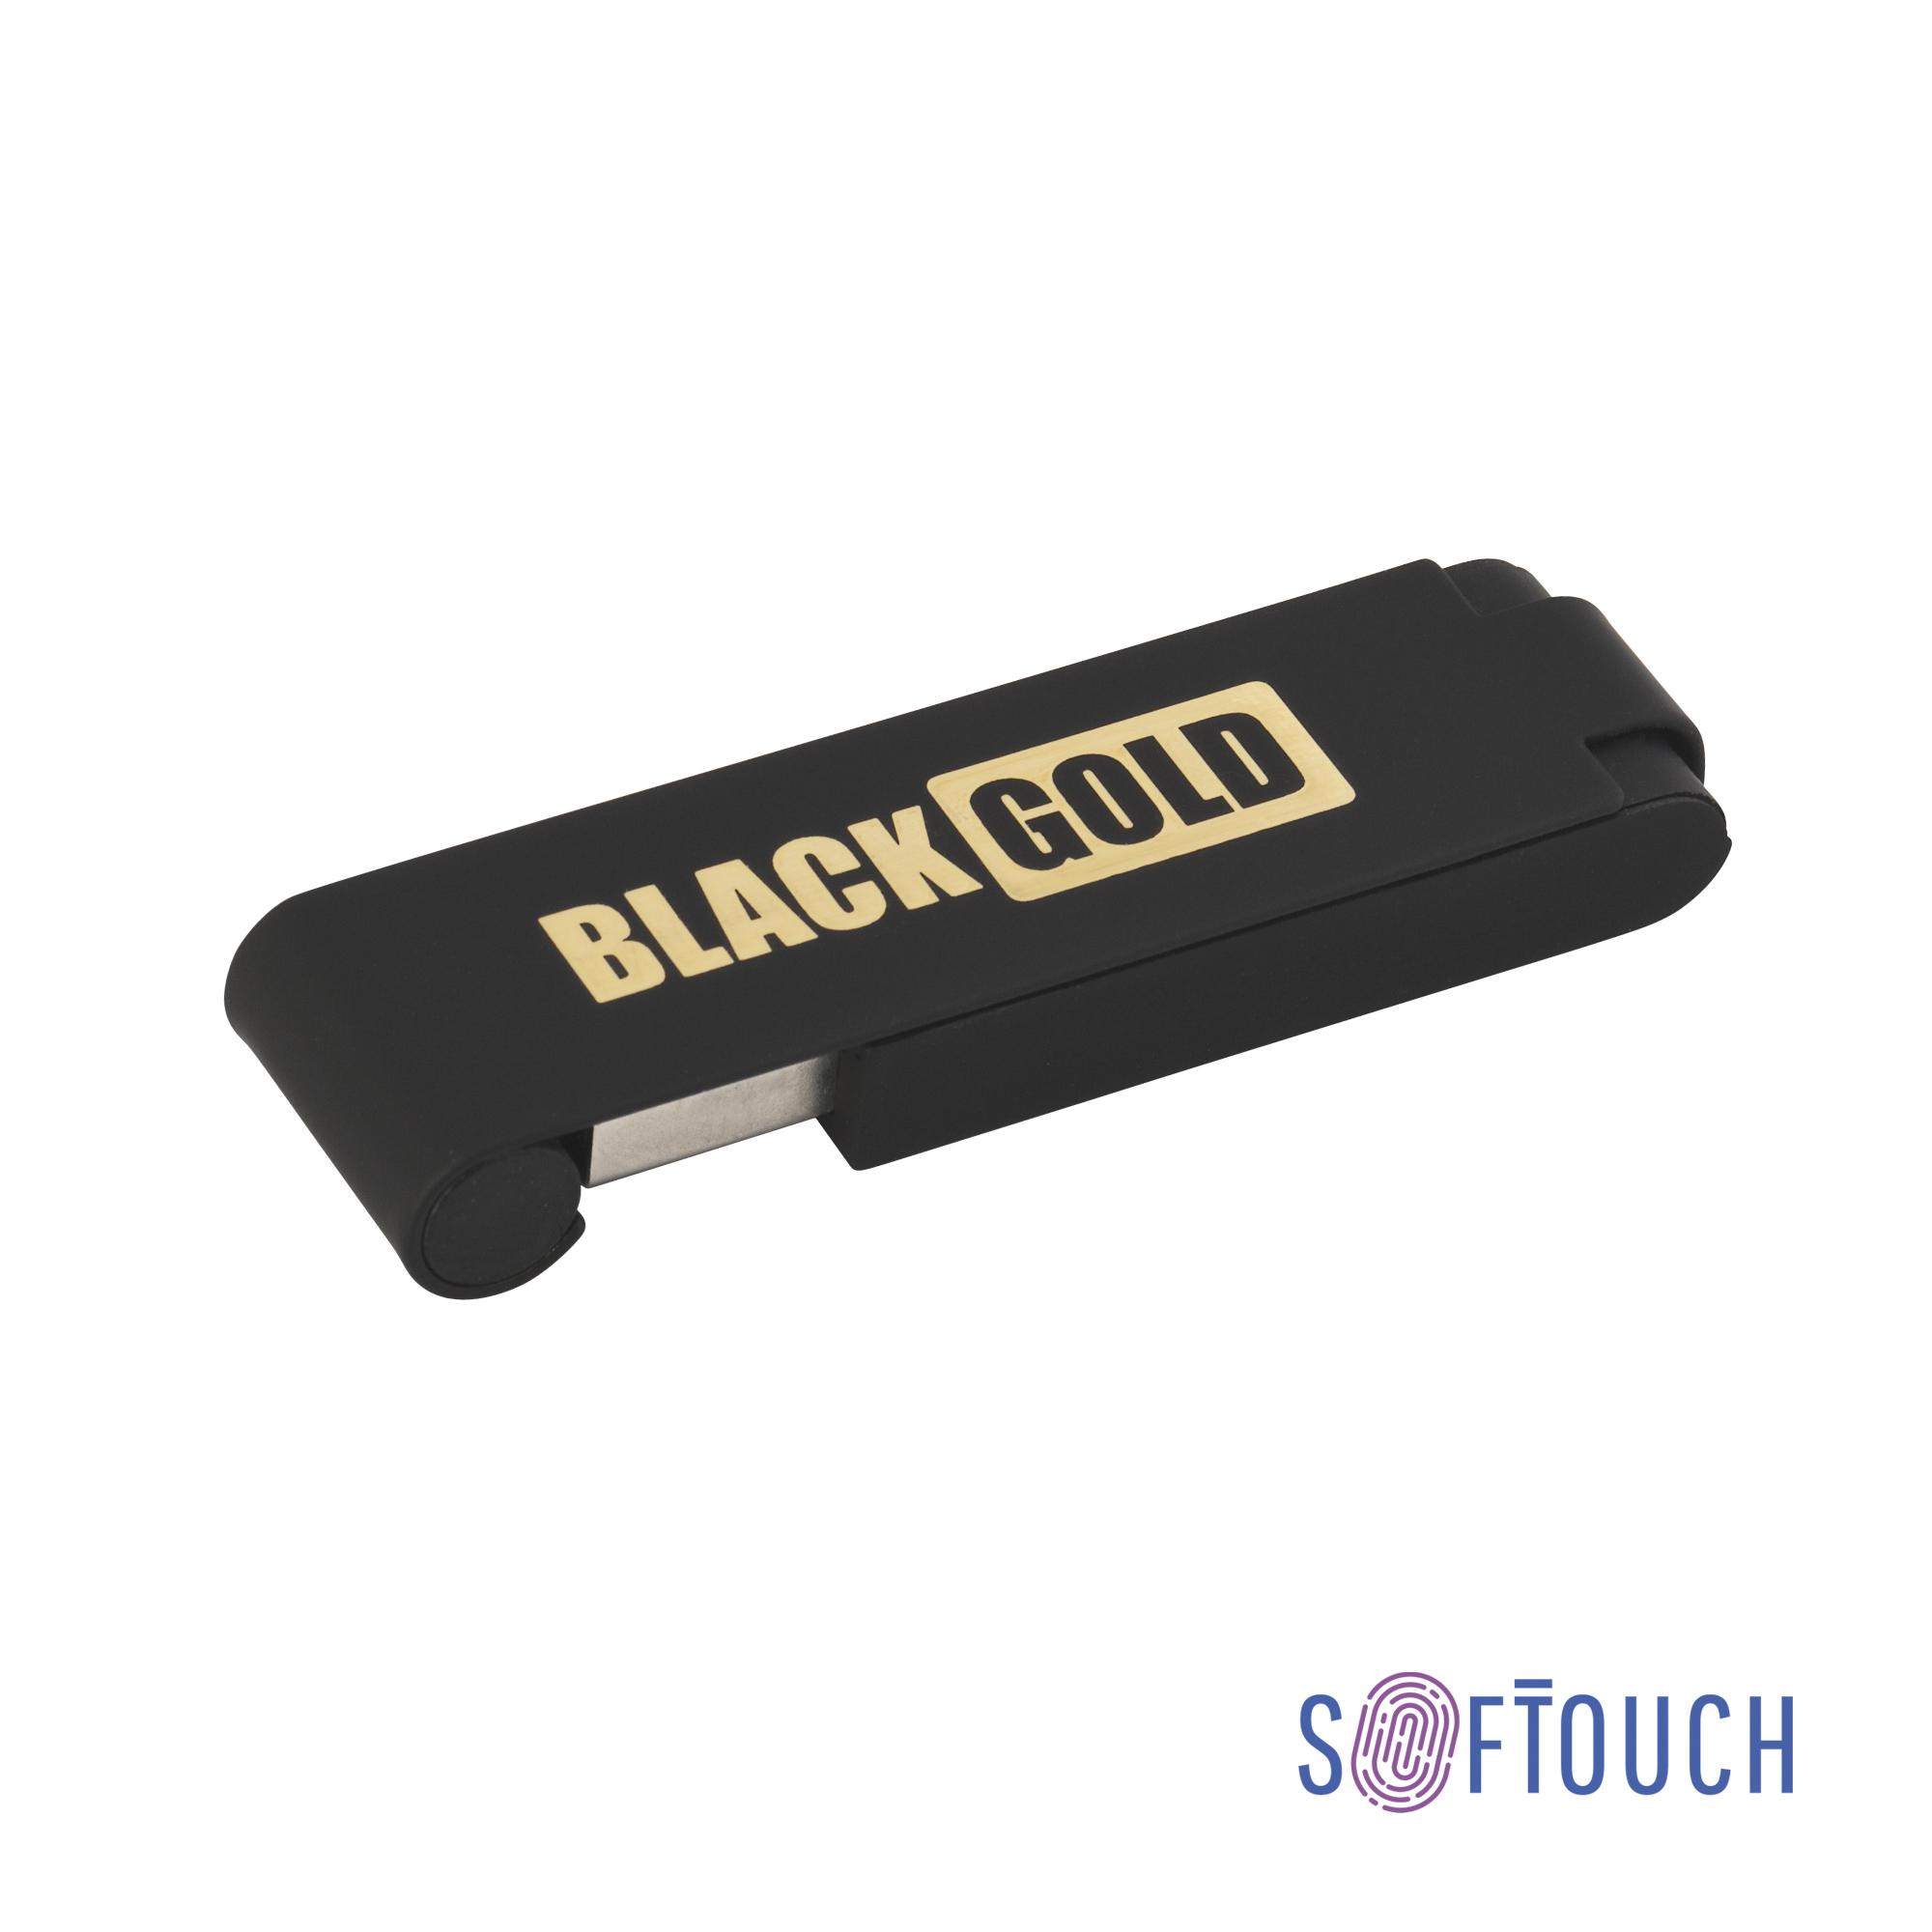 Флеш-карта "Case", объем памяти 16GB, черный/золото, покрытие soft touch, цвет черный с золотом